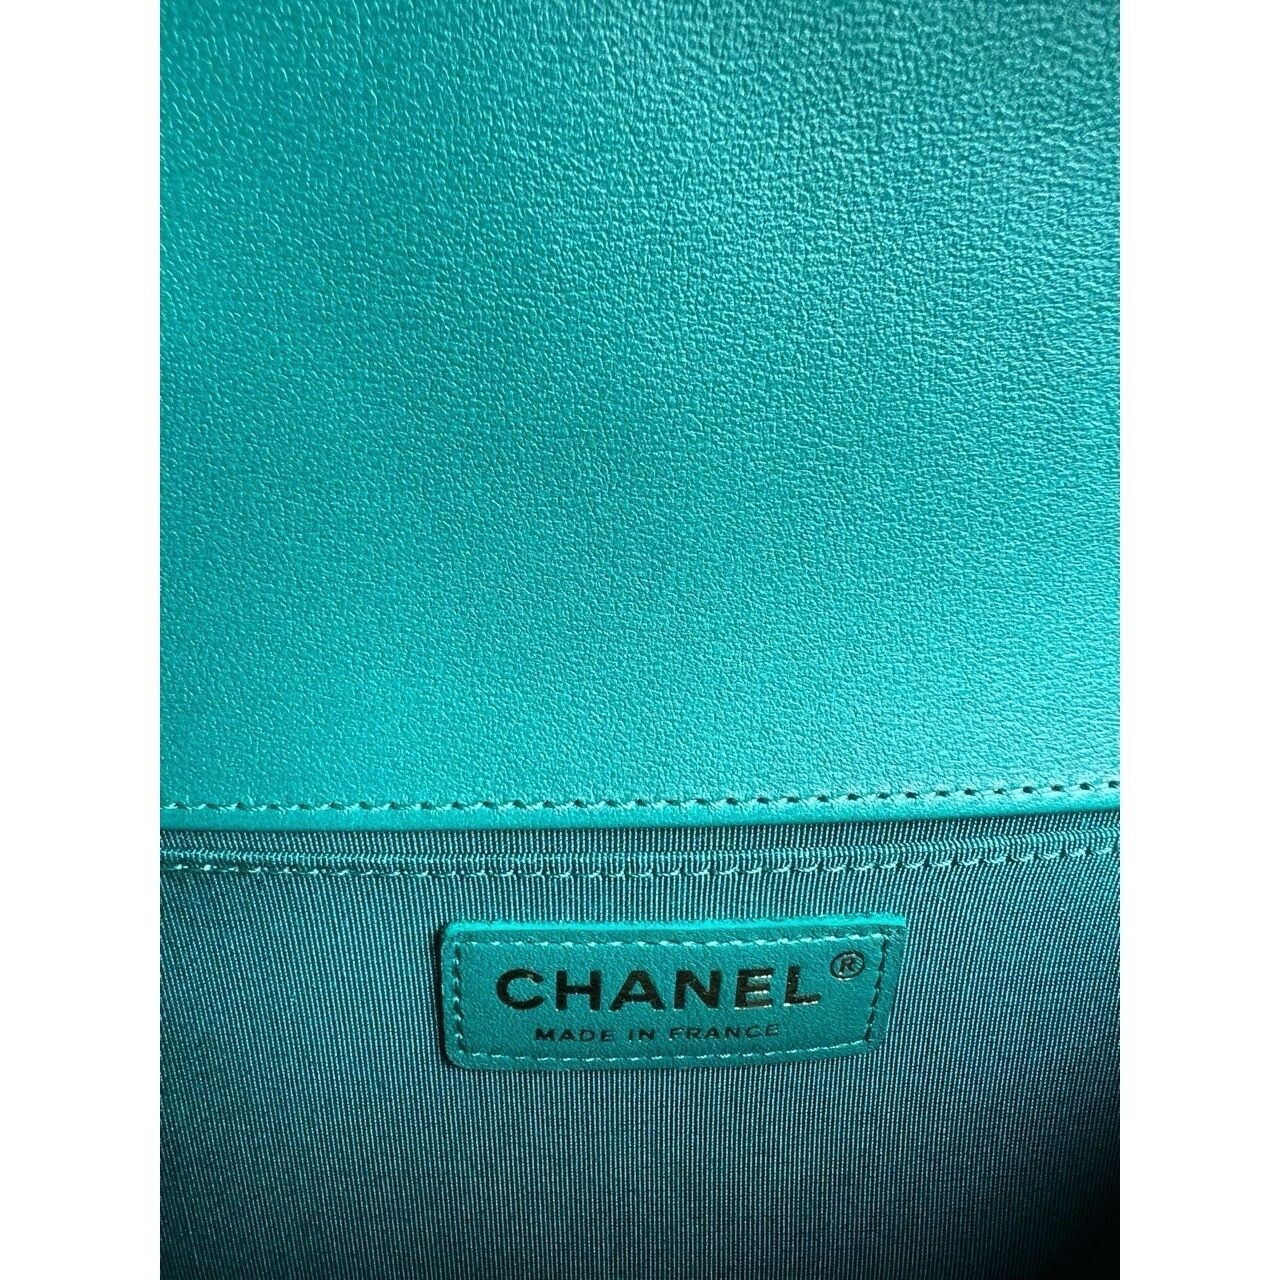 Chanel Boy Green Shoulder Bag